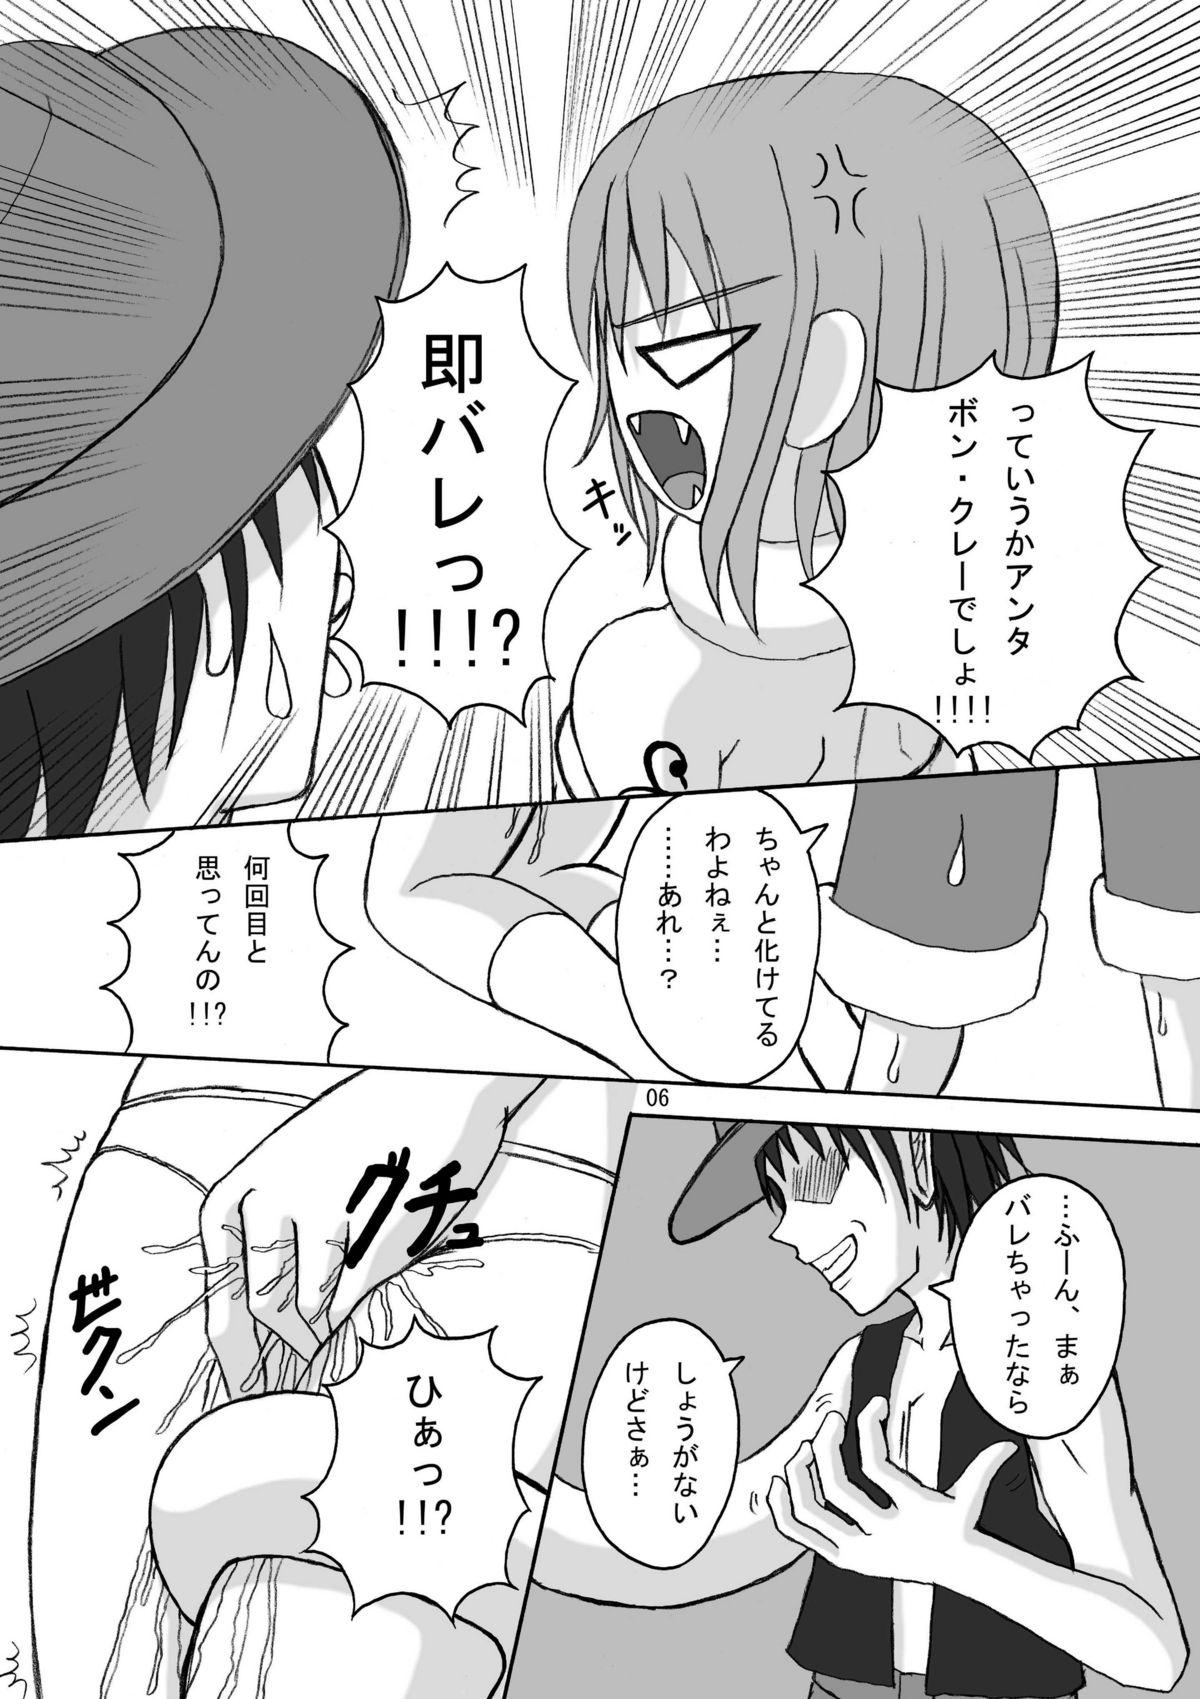 Gay Emo Jump Tales 5 San P Nami Baku More Condom Nami vs Gear3 vs Marunomi Hebihime - One piece Cuckold - Page 5